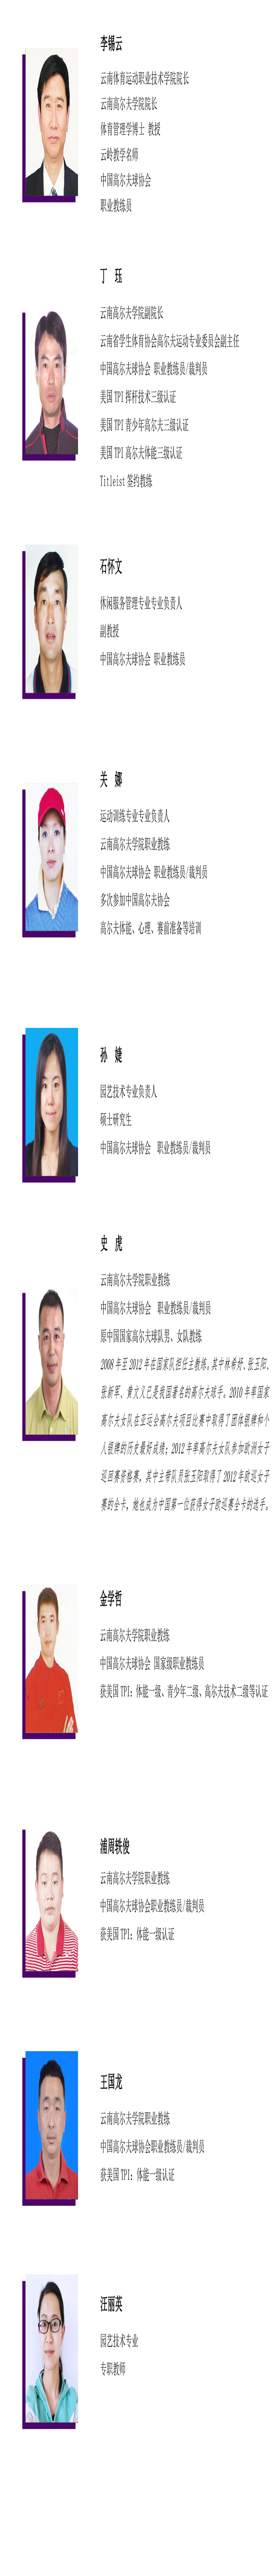 云南体育运动职业技术学院老师